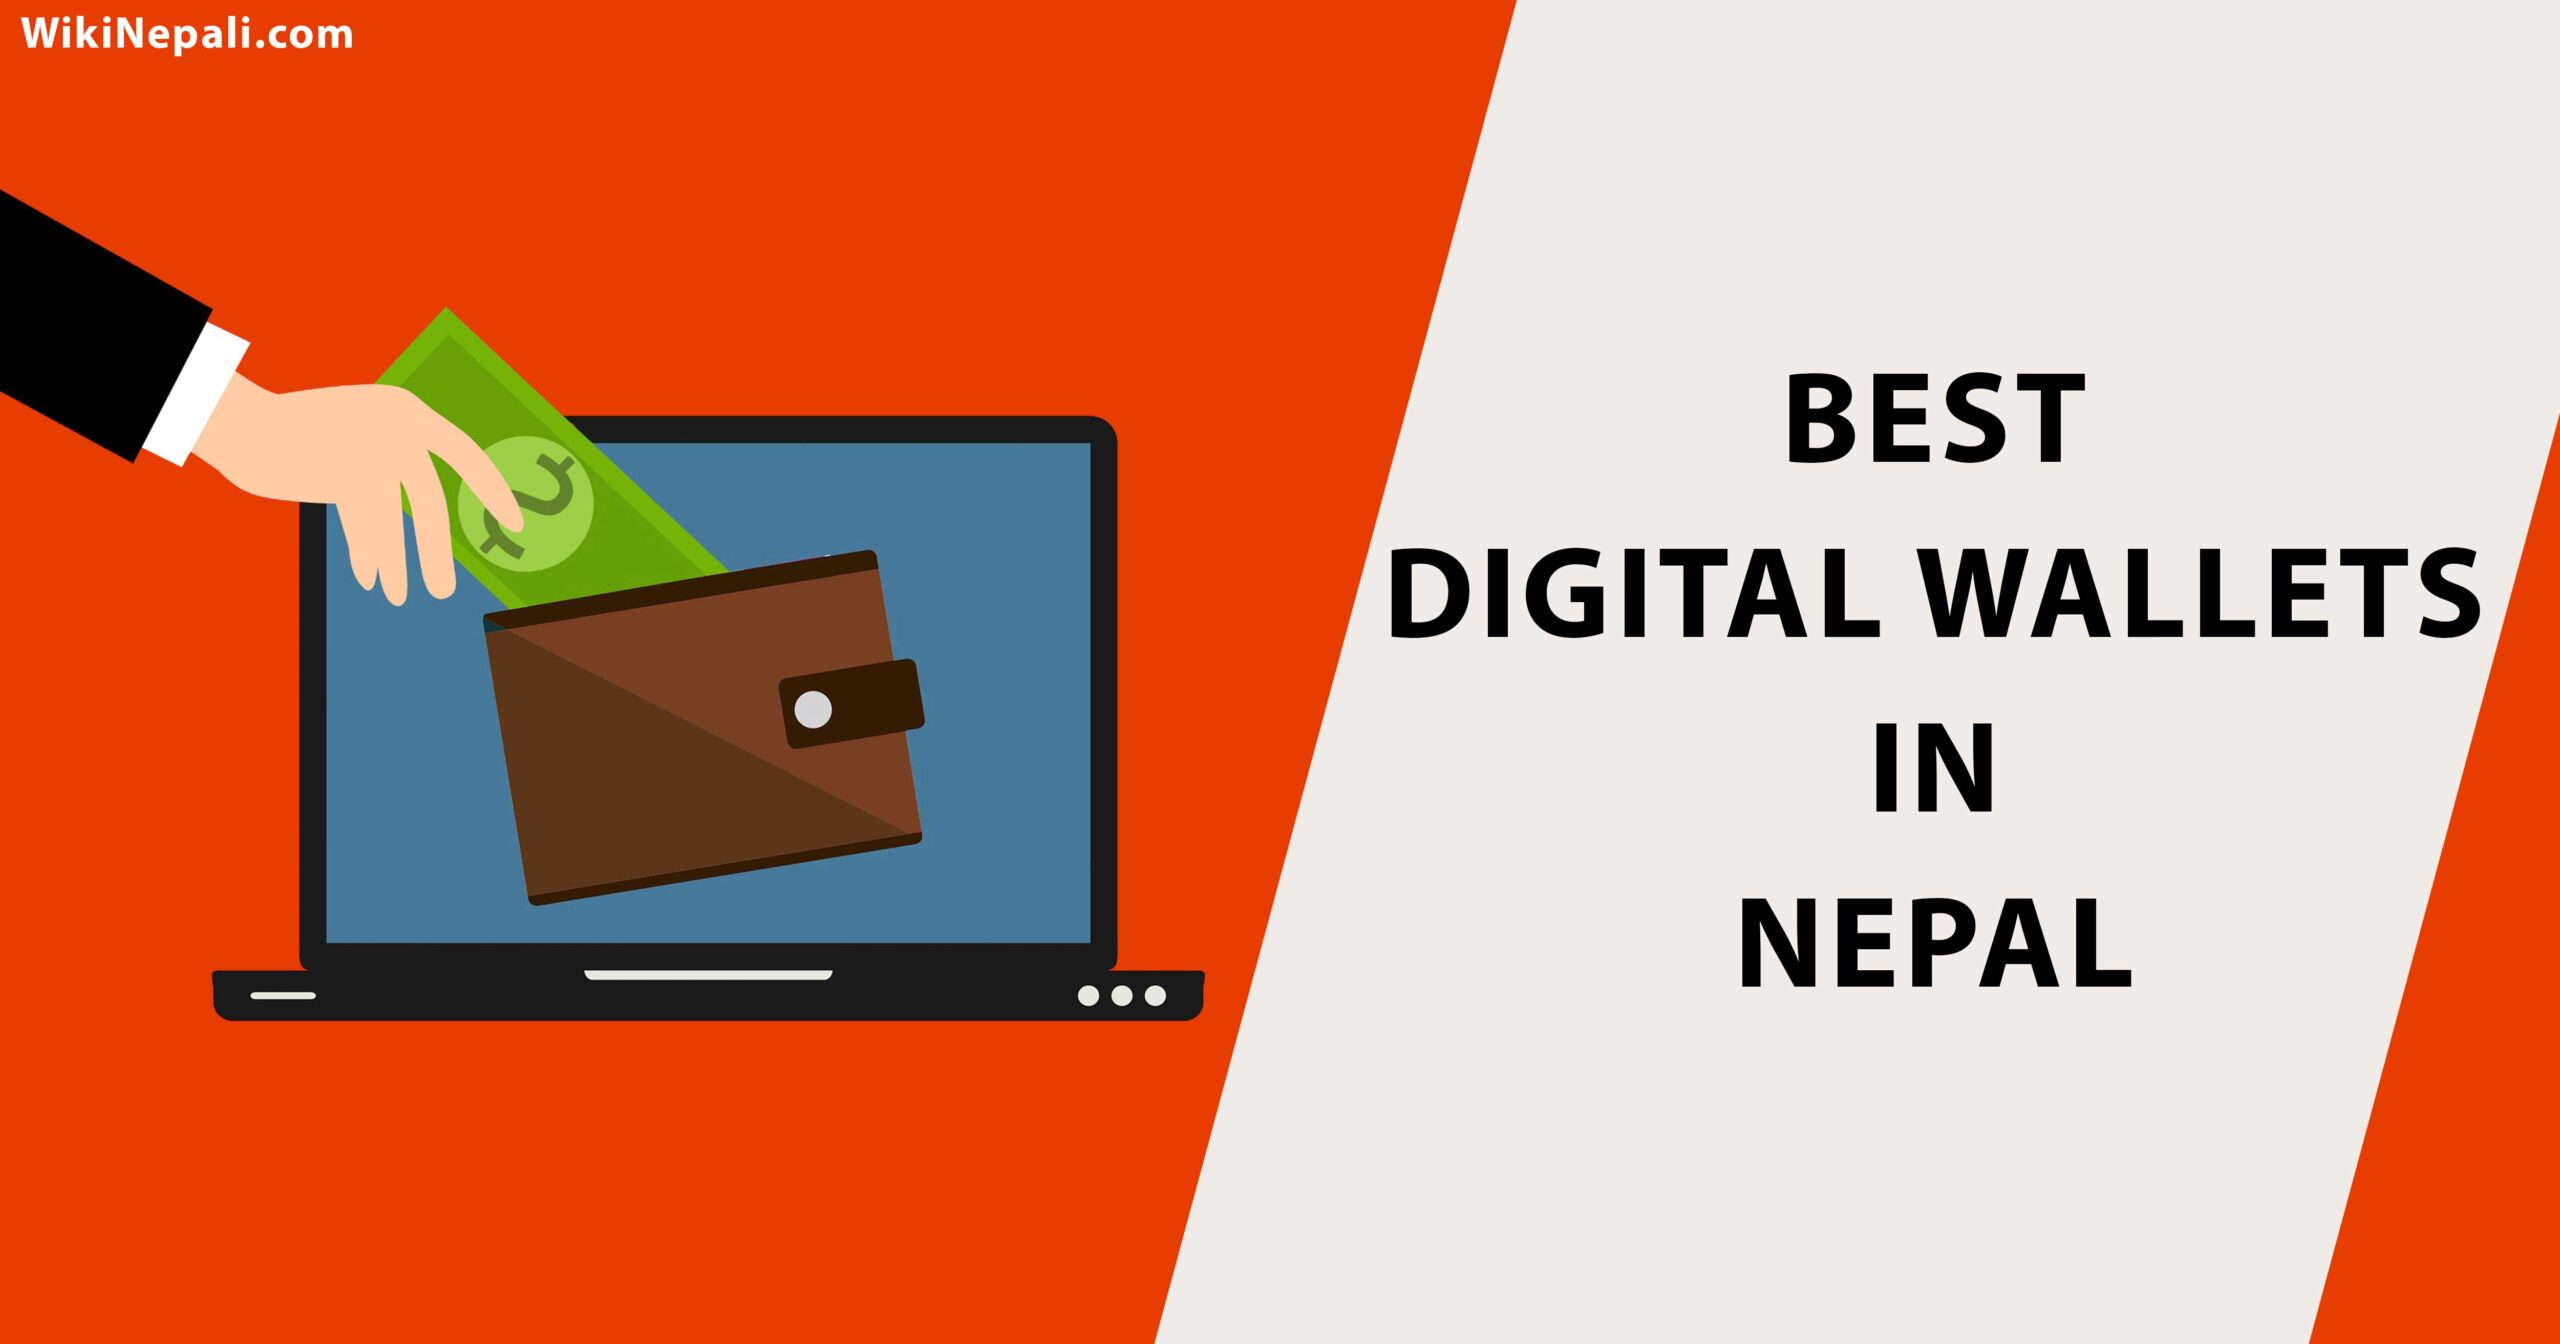 Top Digital Wallet in Nepal